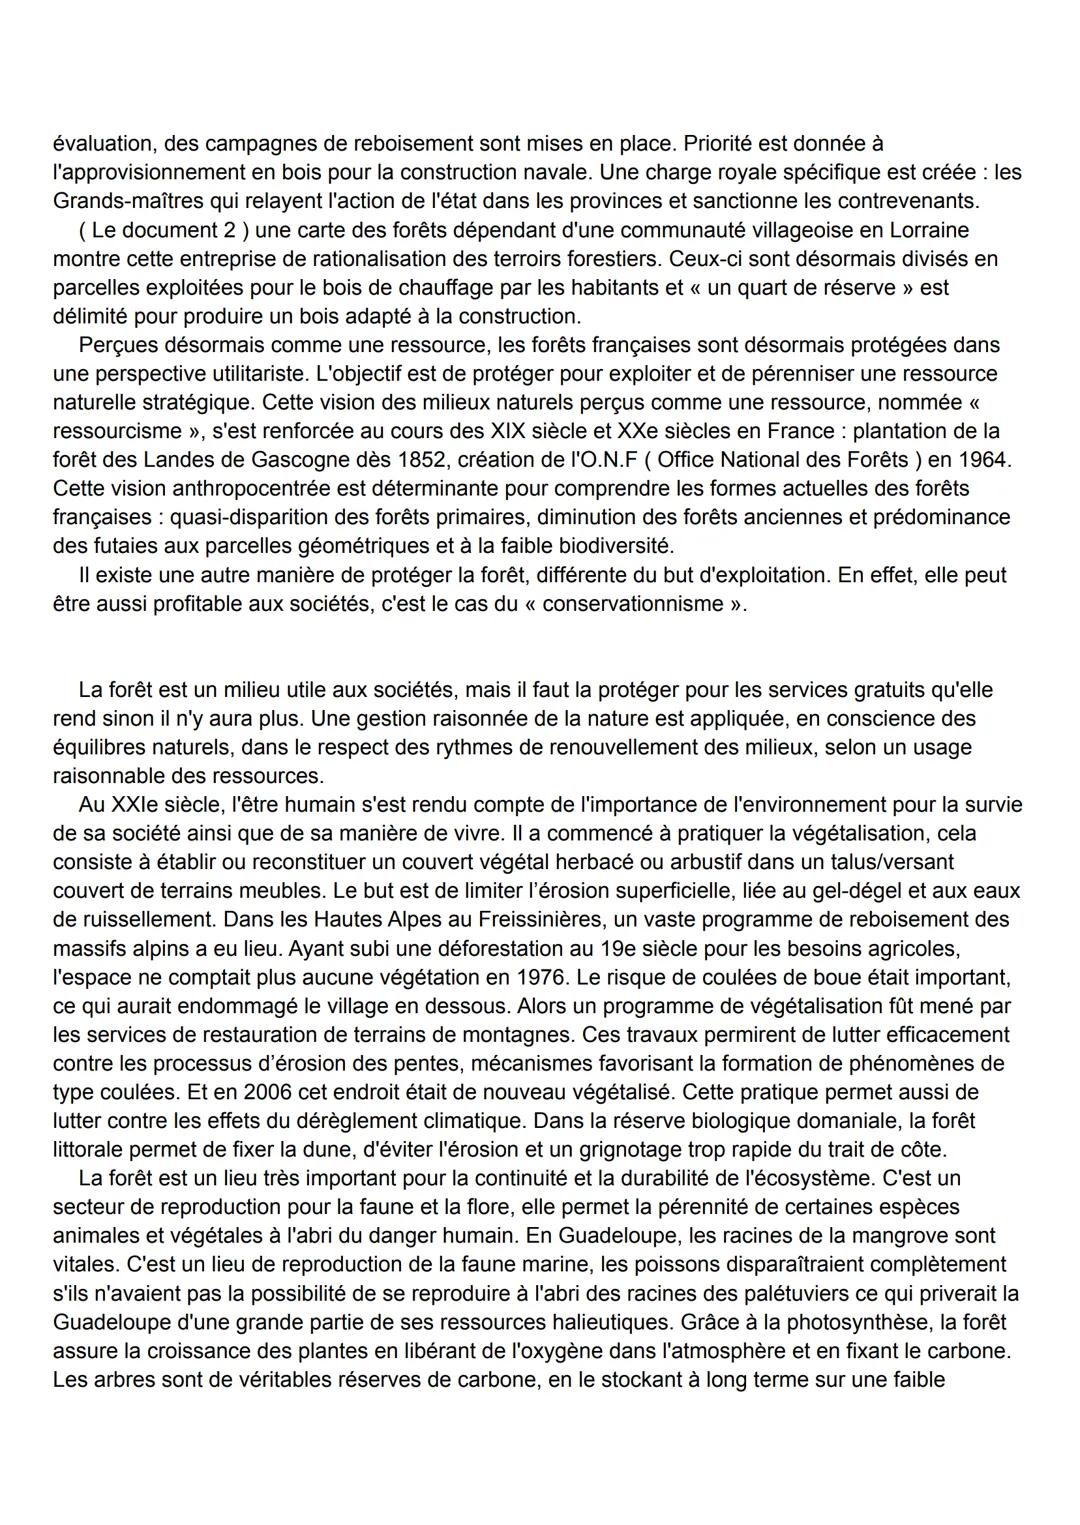 Dissertation HGGSP: Enjeux et pratiques de la forêt française depuis Colbert
Selon WWF (World Wildlife Fund ), l'ONG de la protection de l'e